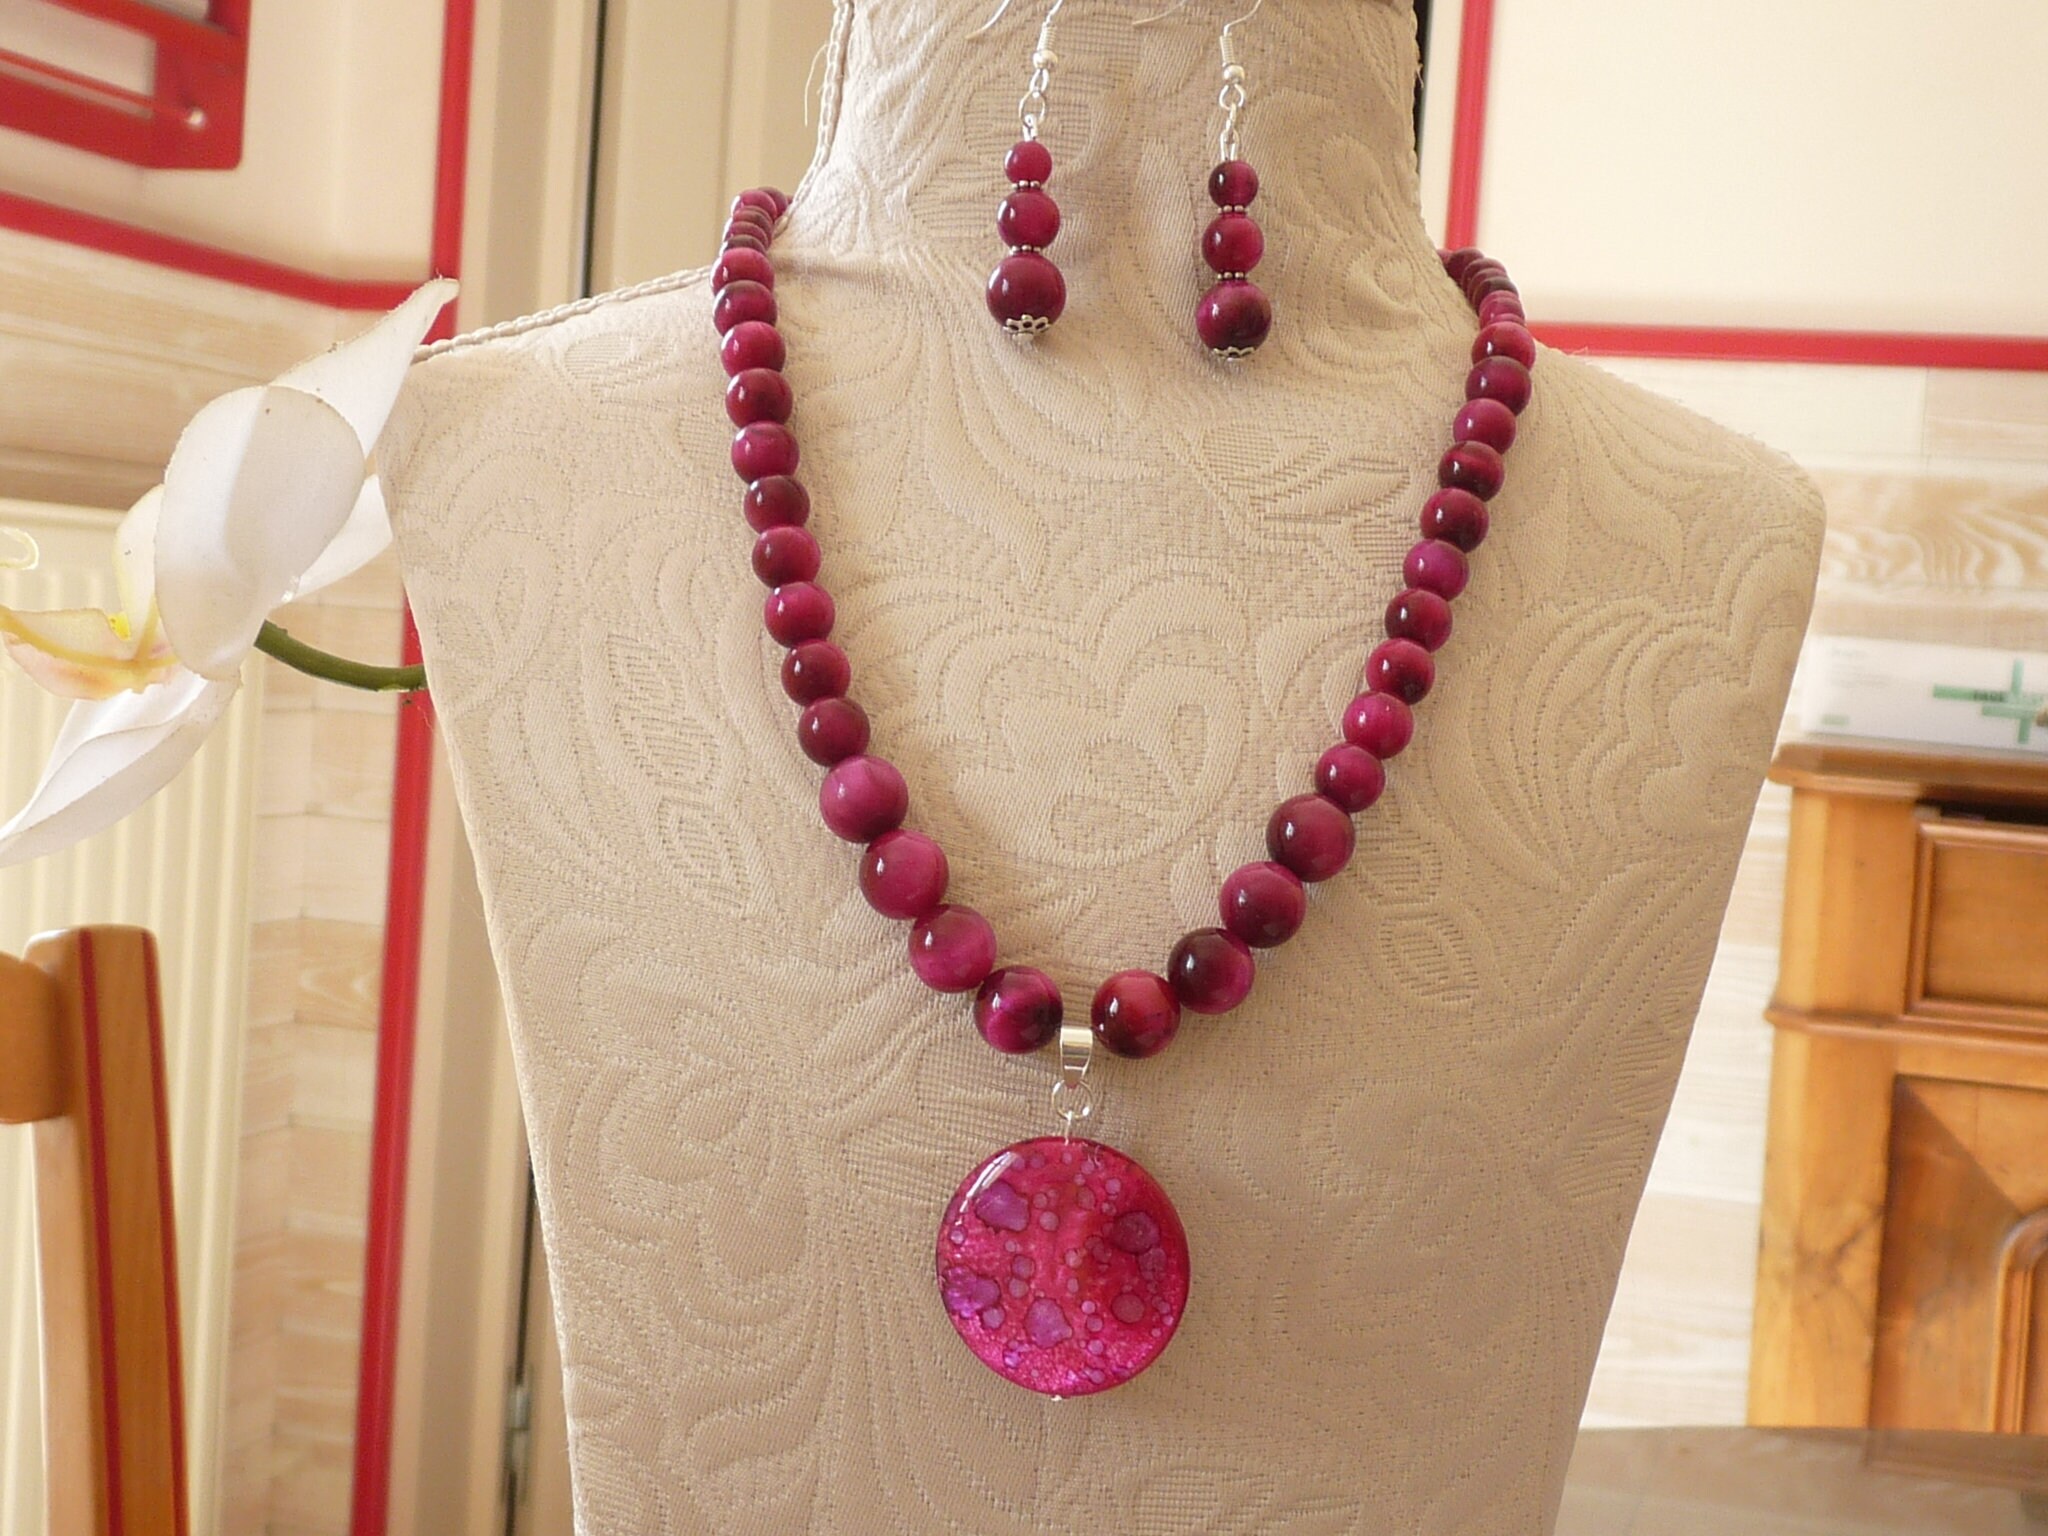 1 grosse perle ronde en acrylique violet, rose, bleu, écru, 20mm - Un grand  marché